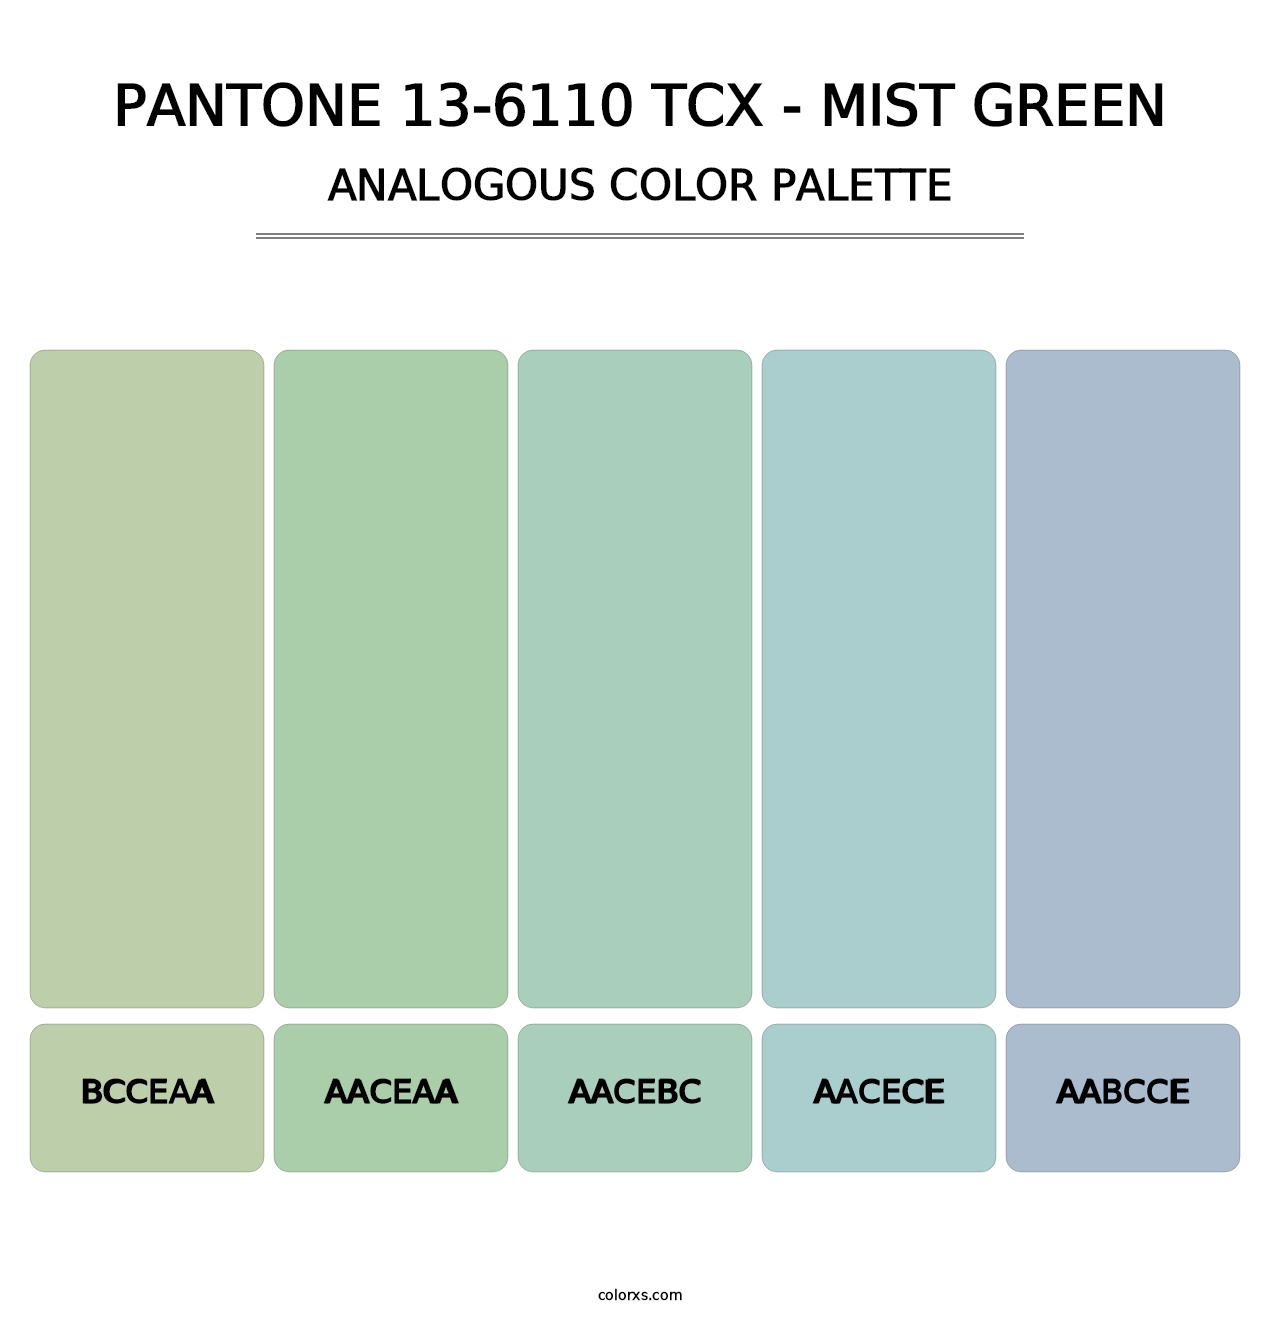 PANTONE 13-6110 TCX - Mist Green - Analogous Color Palette